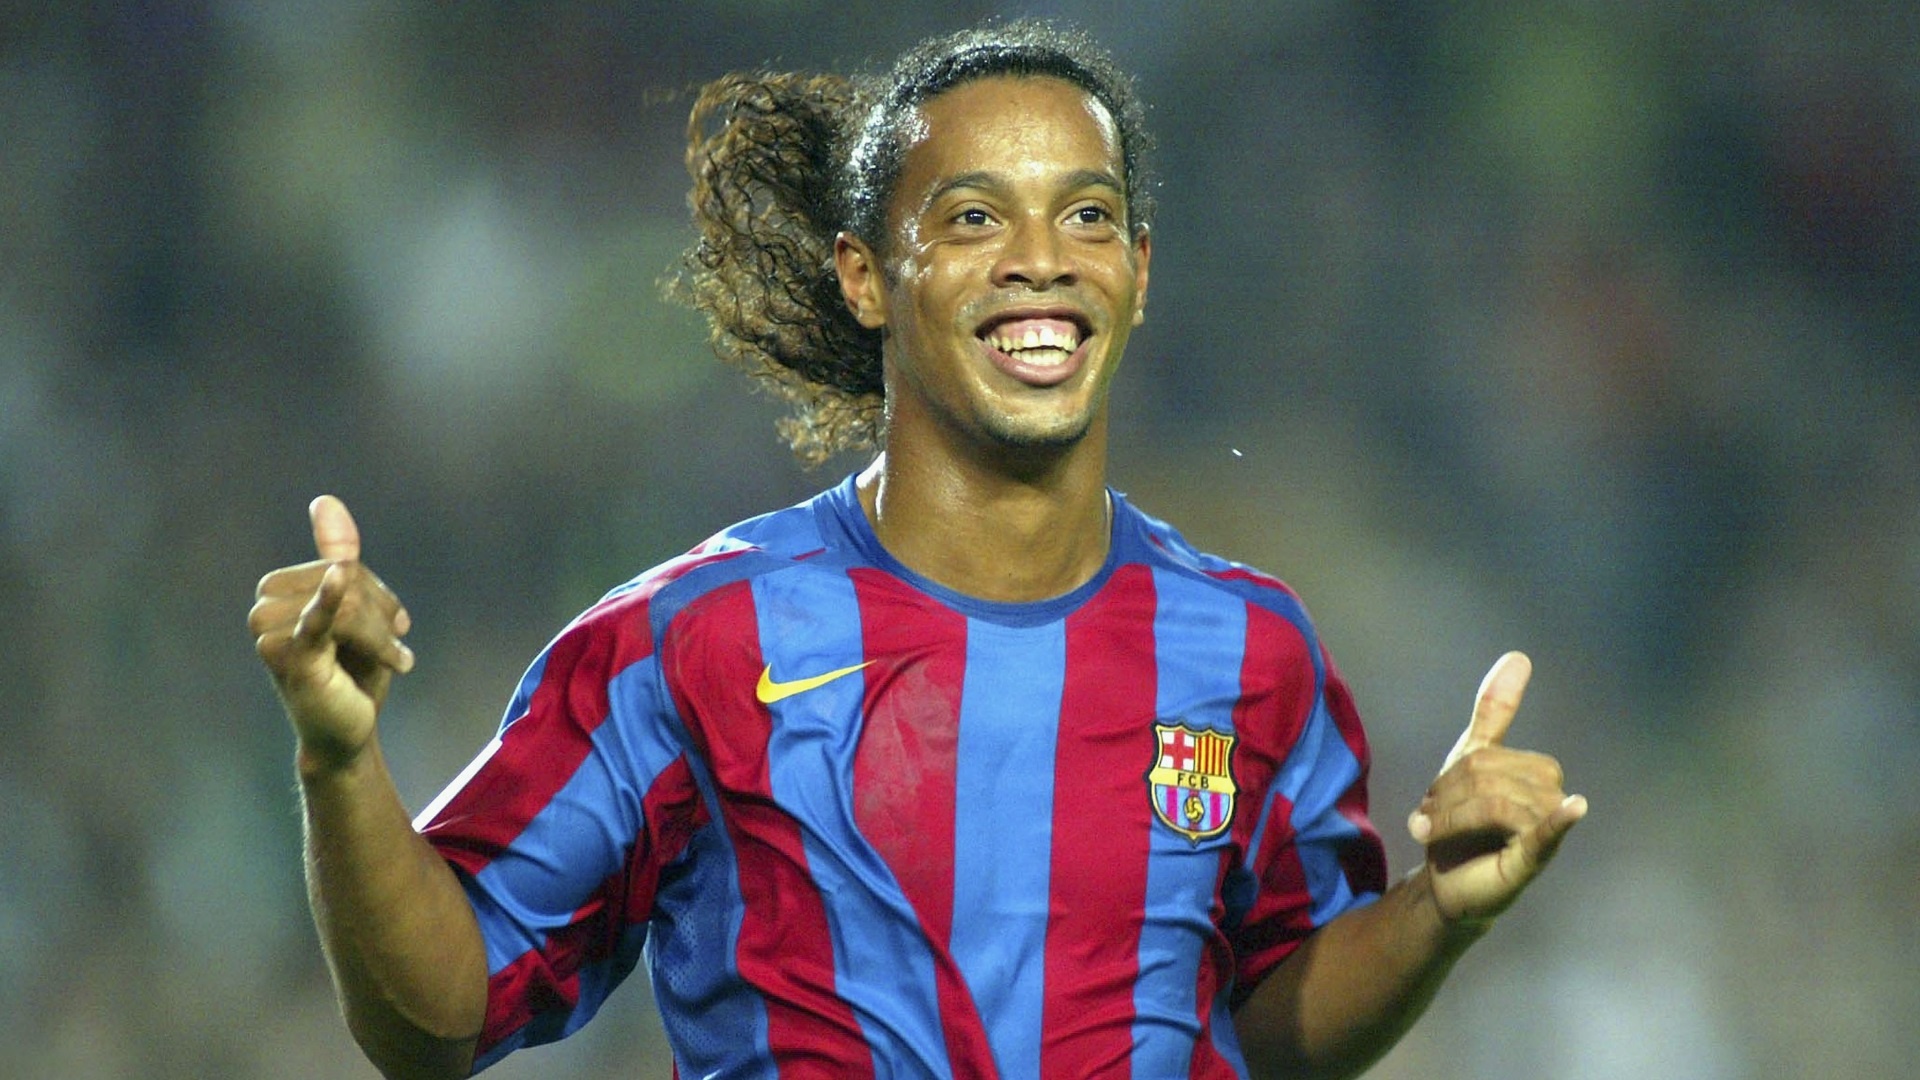 Ronaldinho Gaúcho - A Lenda 